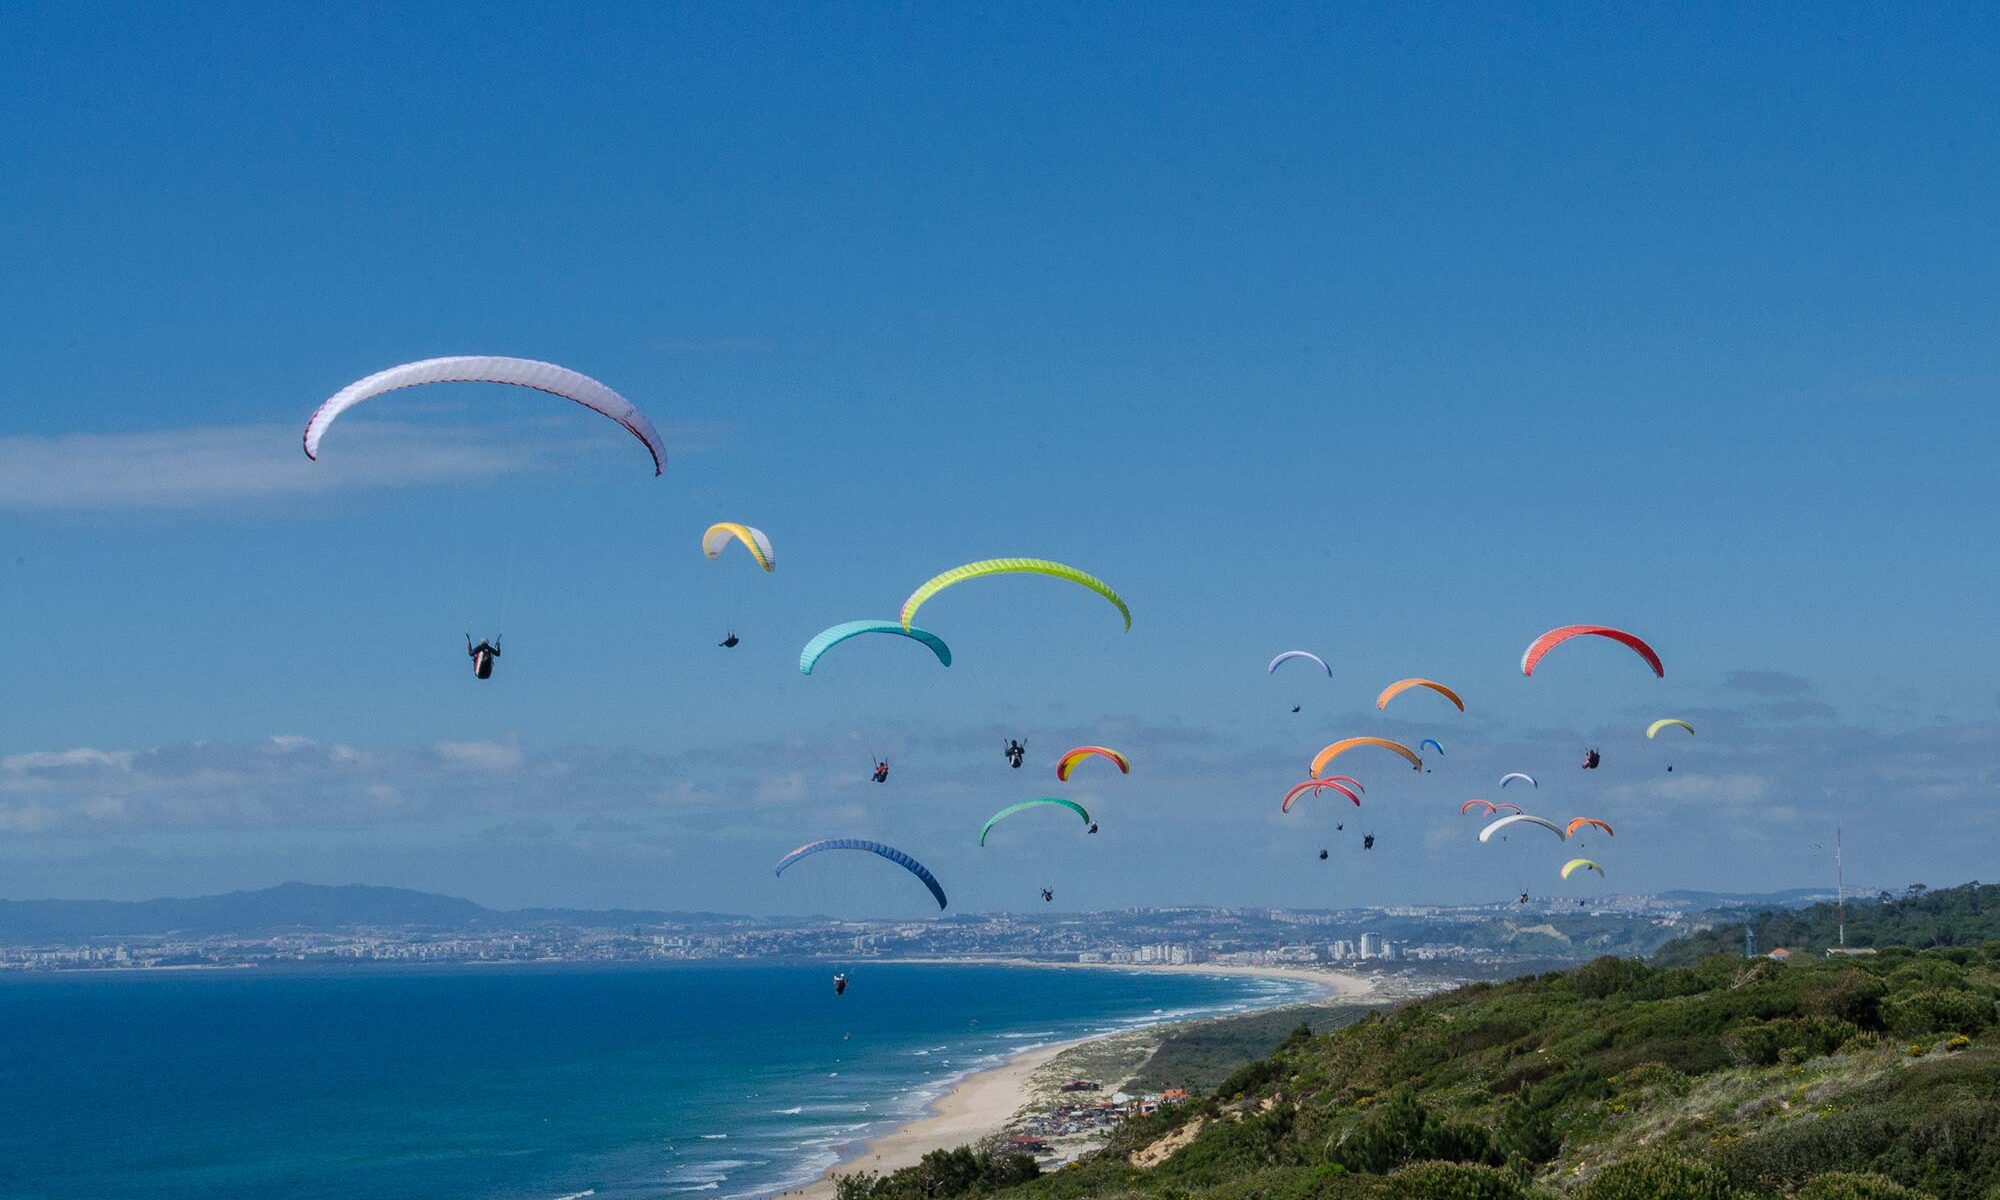 Paragliders at Costa da Caparica